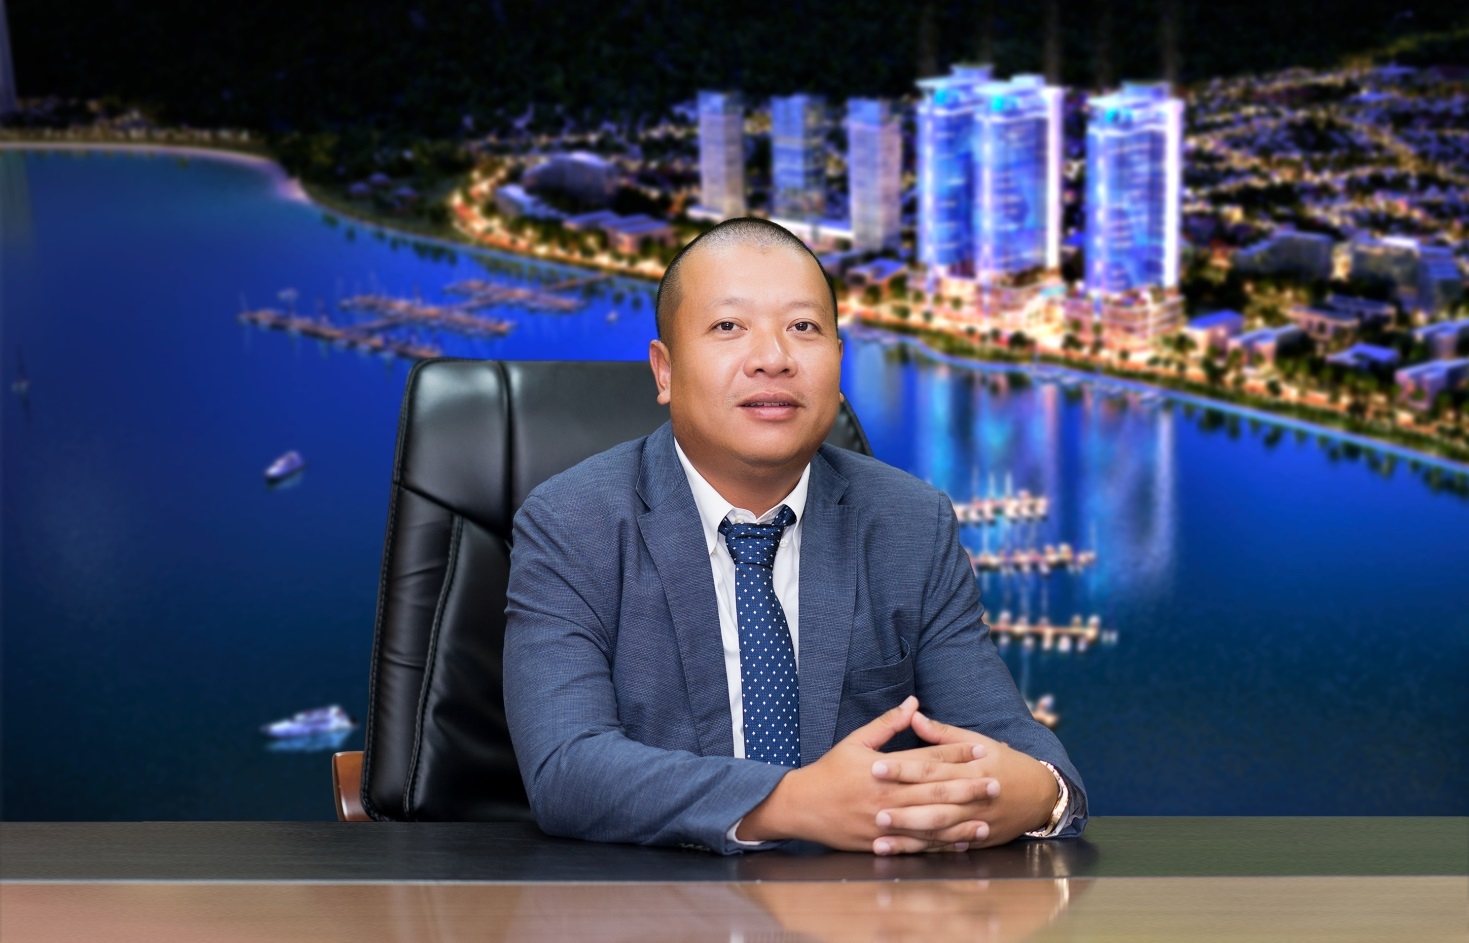 Mr. La Quang Binh – Chairman of La Luna Holdings.